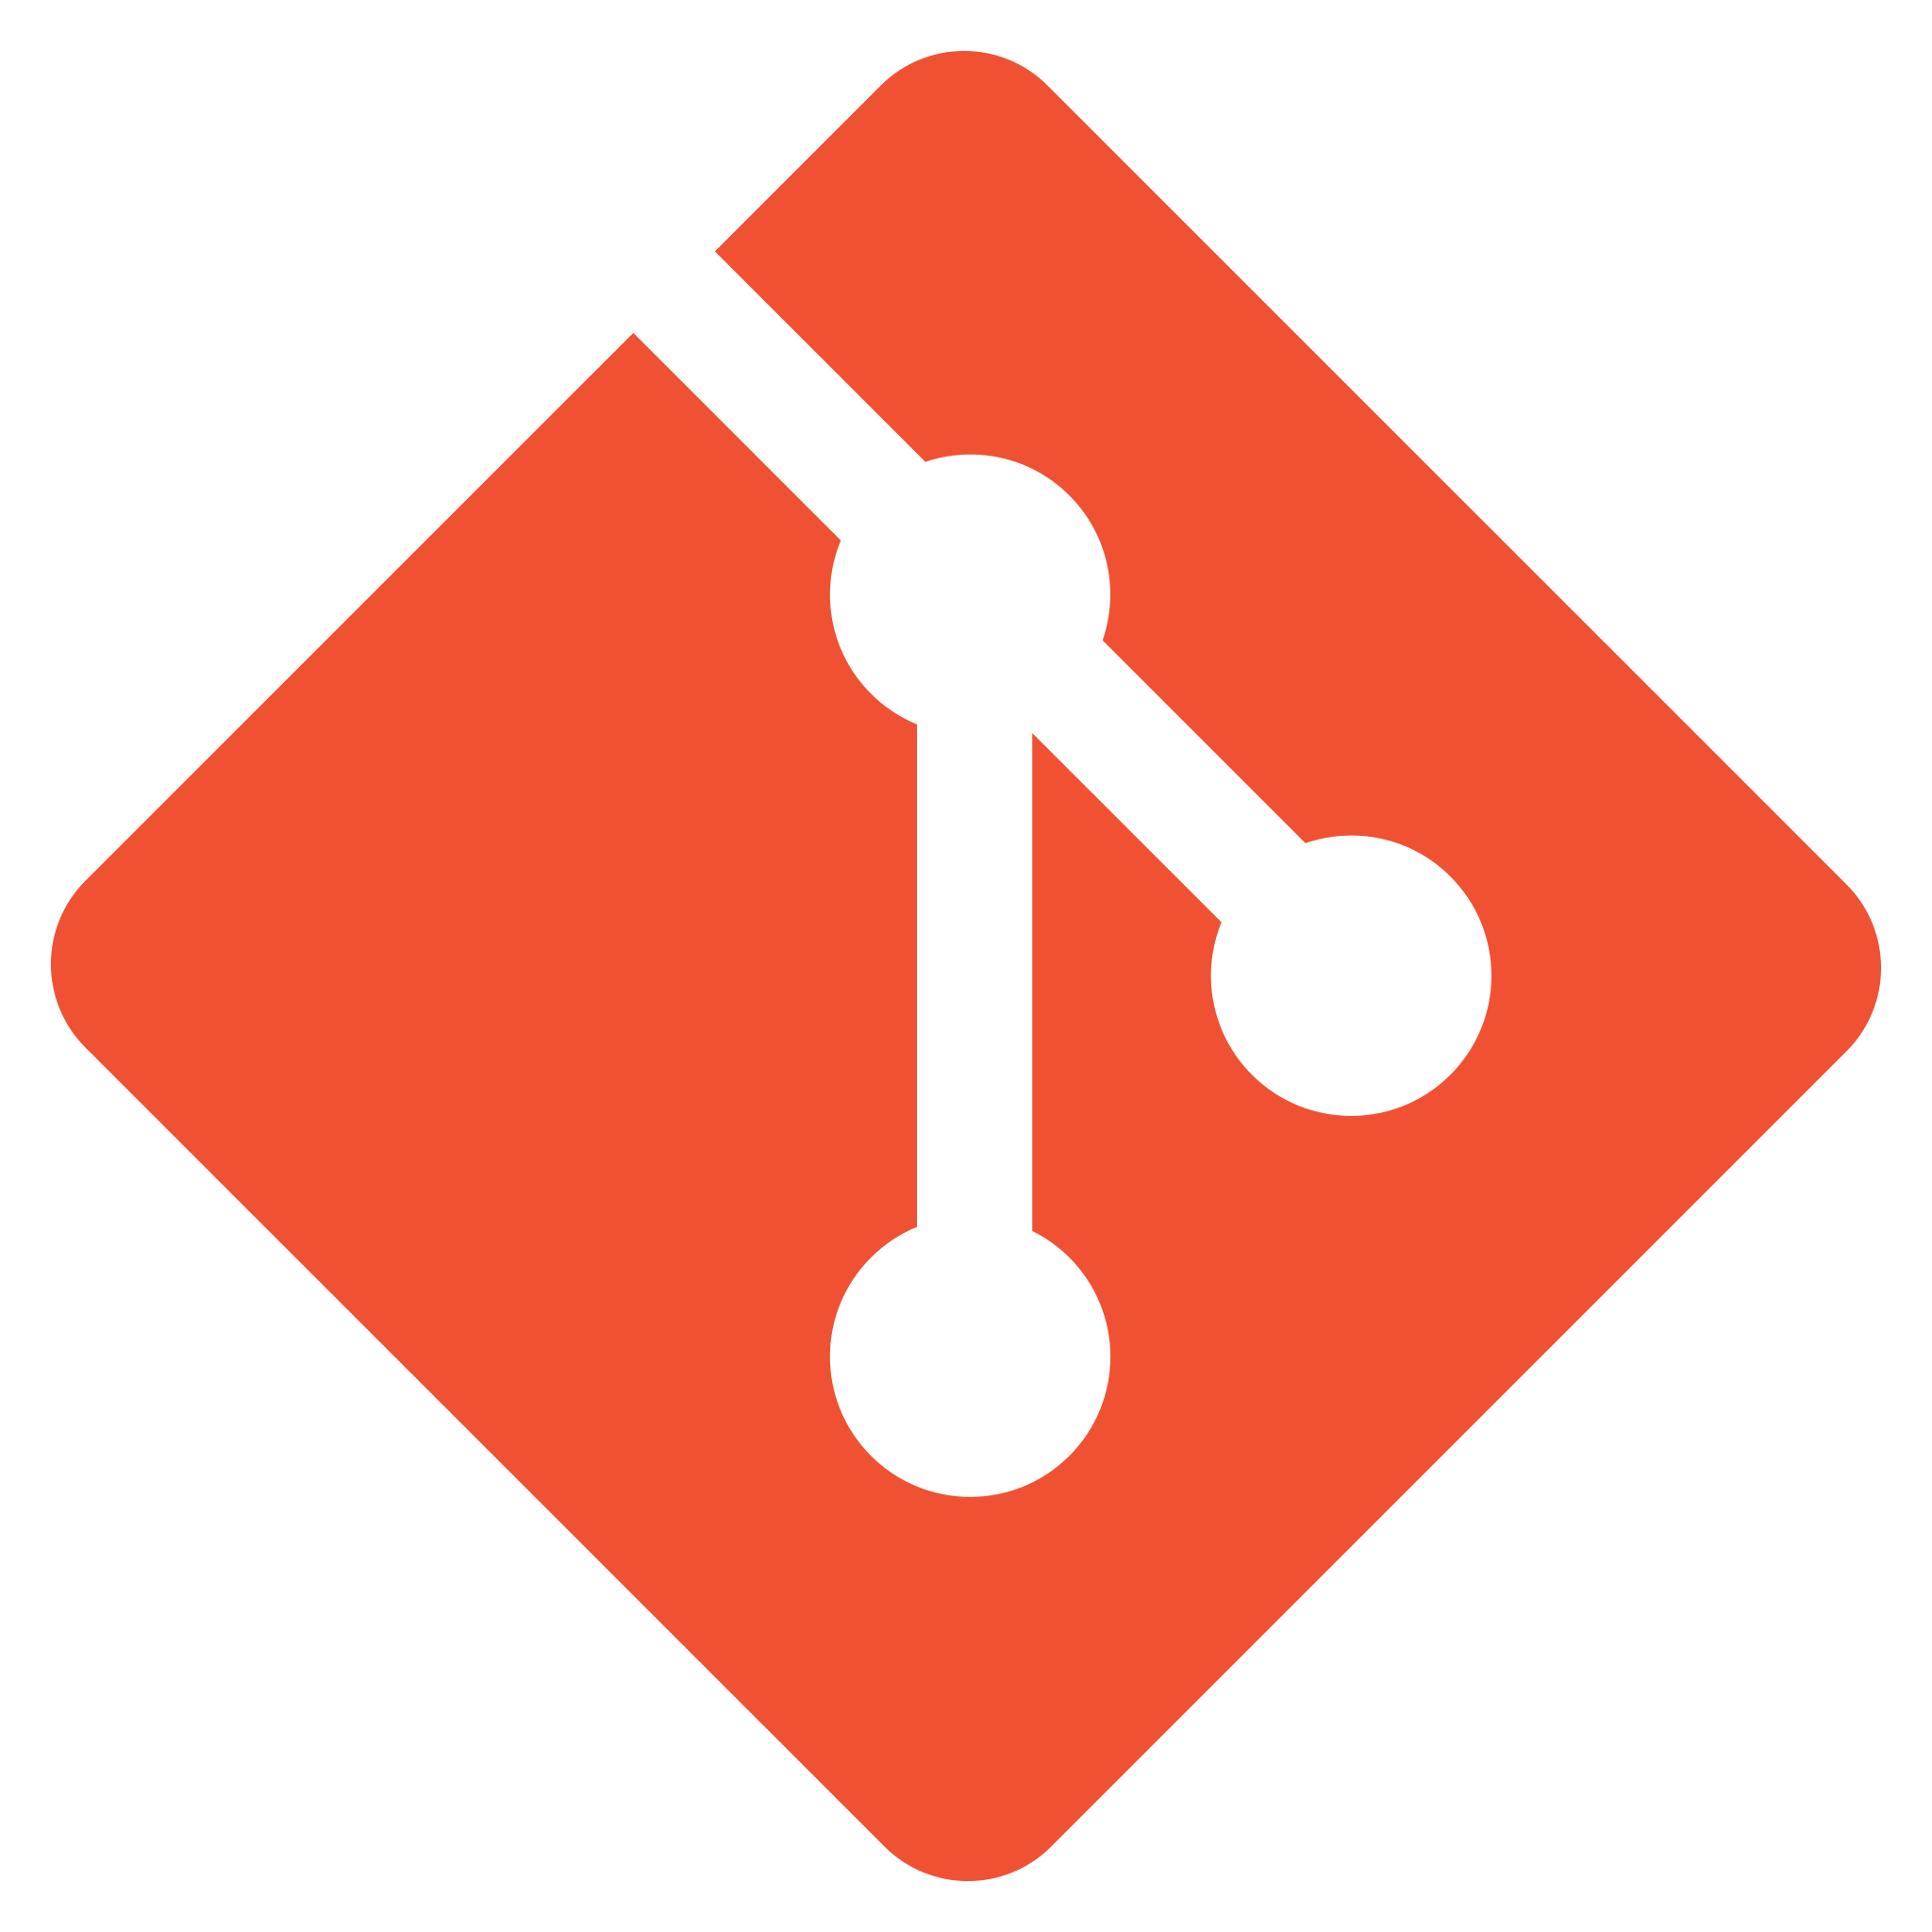 The Git logo